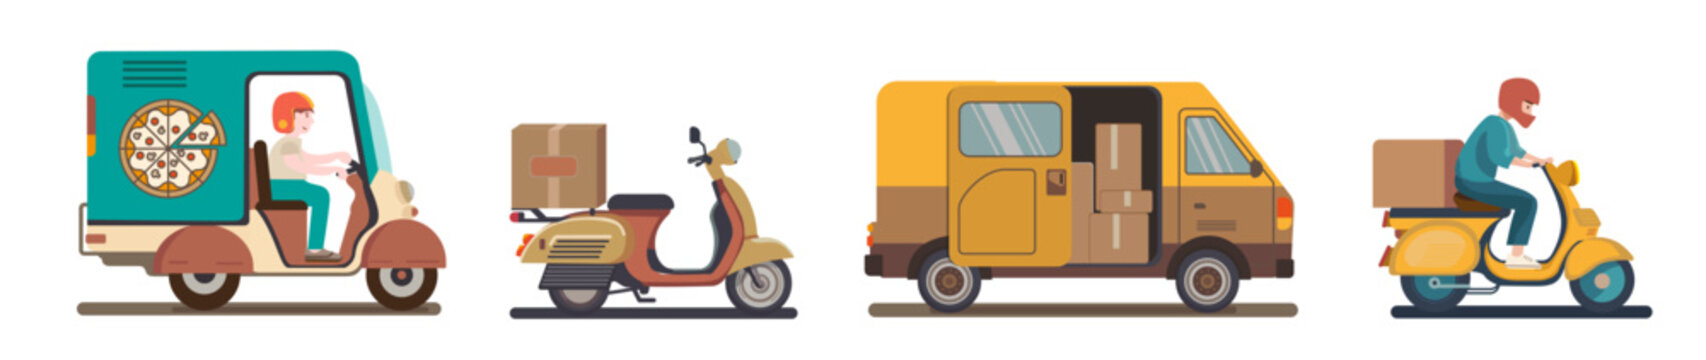 Set Iconos de transporte, ilustración vectorial de moto y camioneta para entregas a domicilio de paquetes, dibujo animado. 